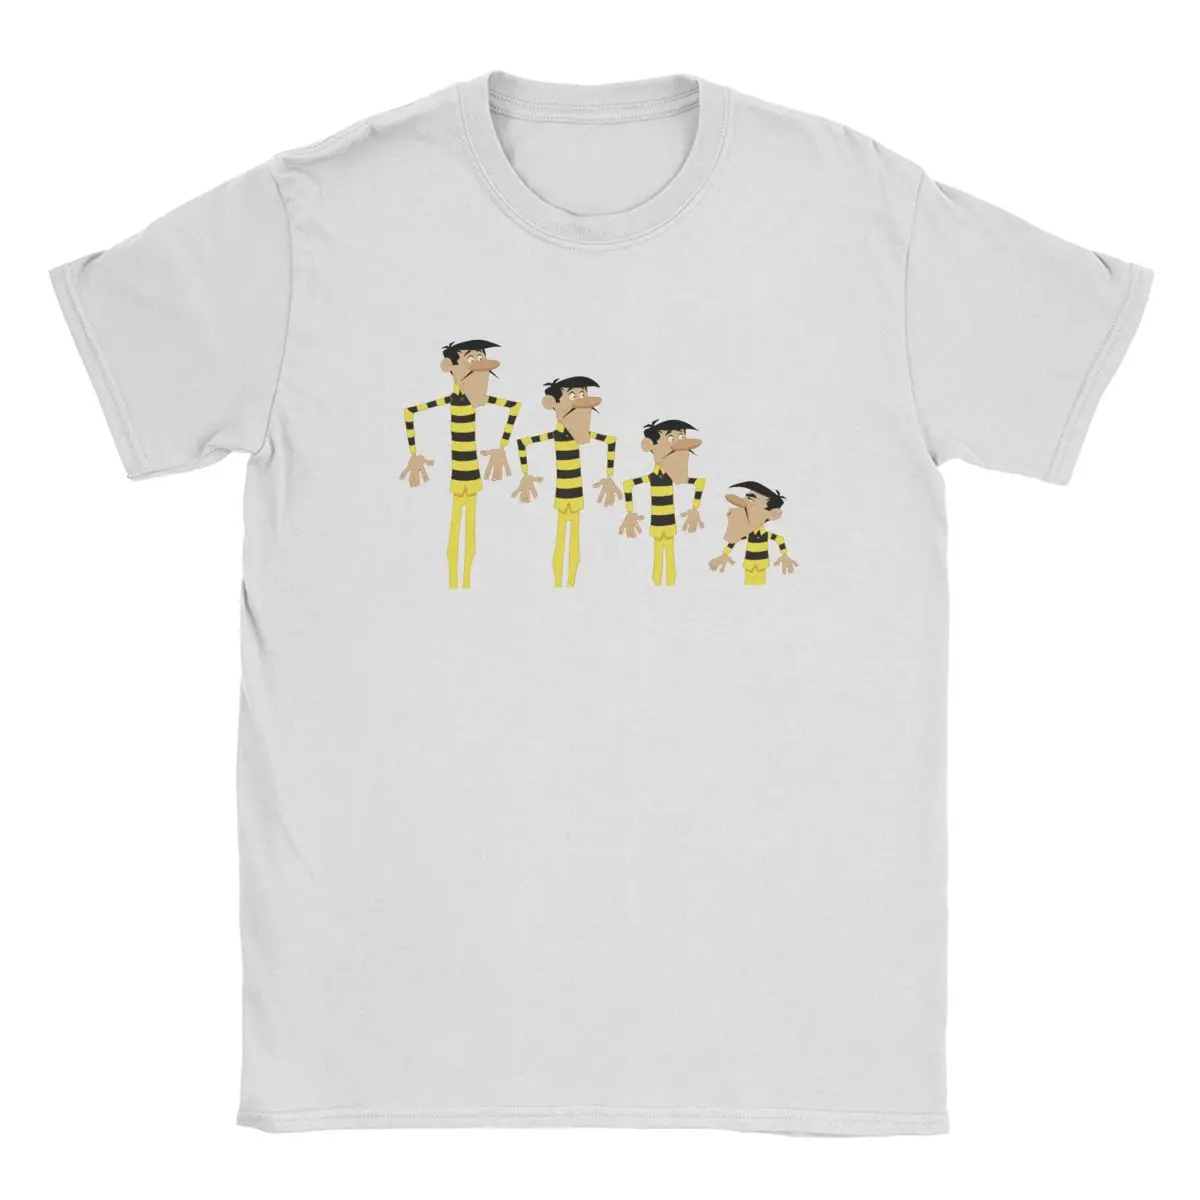 

Lucky Luke Daltons Yellow Child Escape Prison Men T Shirt Novelty Tee Shirt Short Sleeve T-Shirts 100% Cotton 4XL 5XL Tops